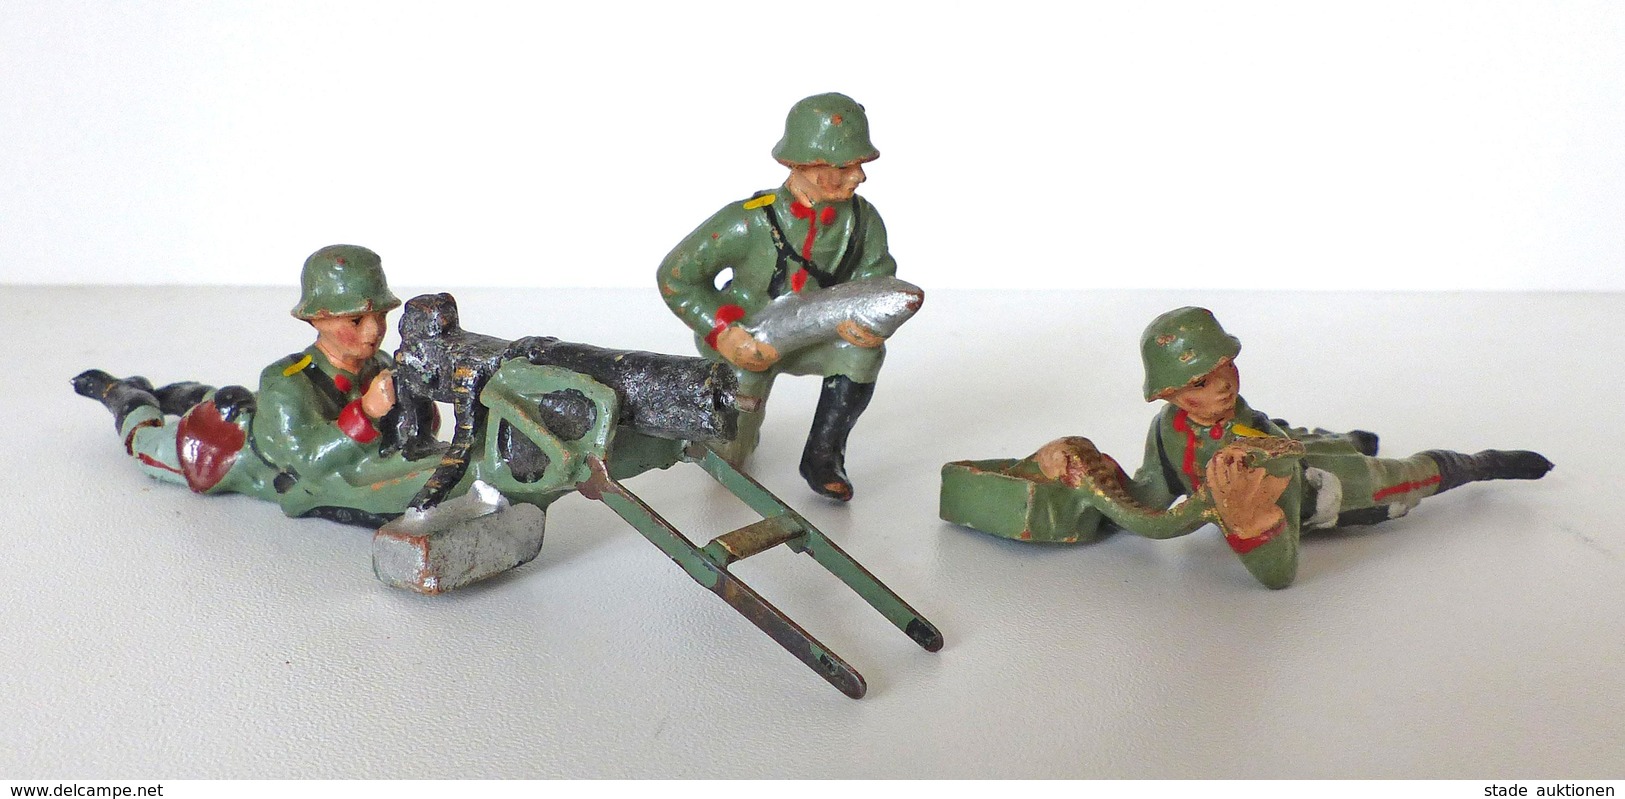 Zwischenkriegszeit Wehrmacht Lineol U. Elastin Figuren 3 Soldaten 1x Mit SMG 1x MG Munition 1x Minenwerfer Bespielt I-II - Geschichte